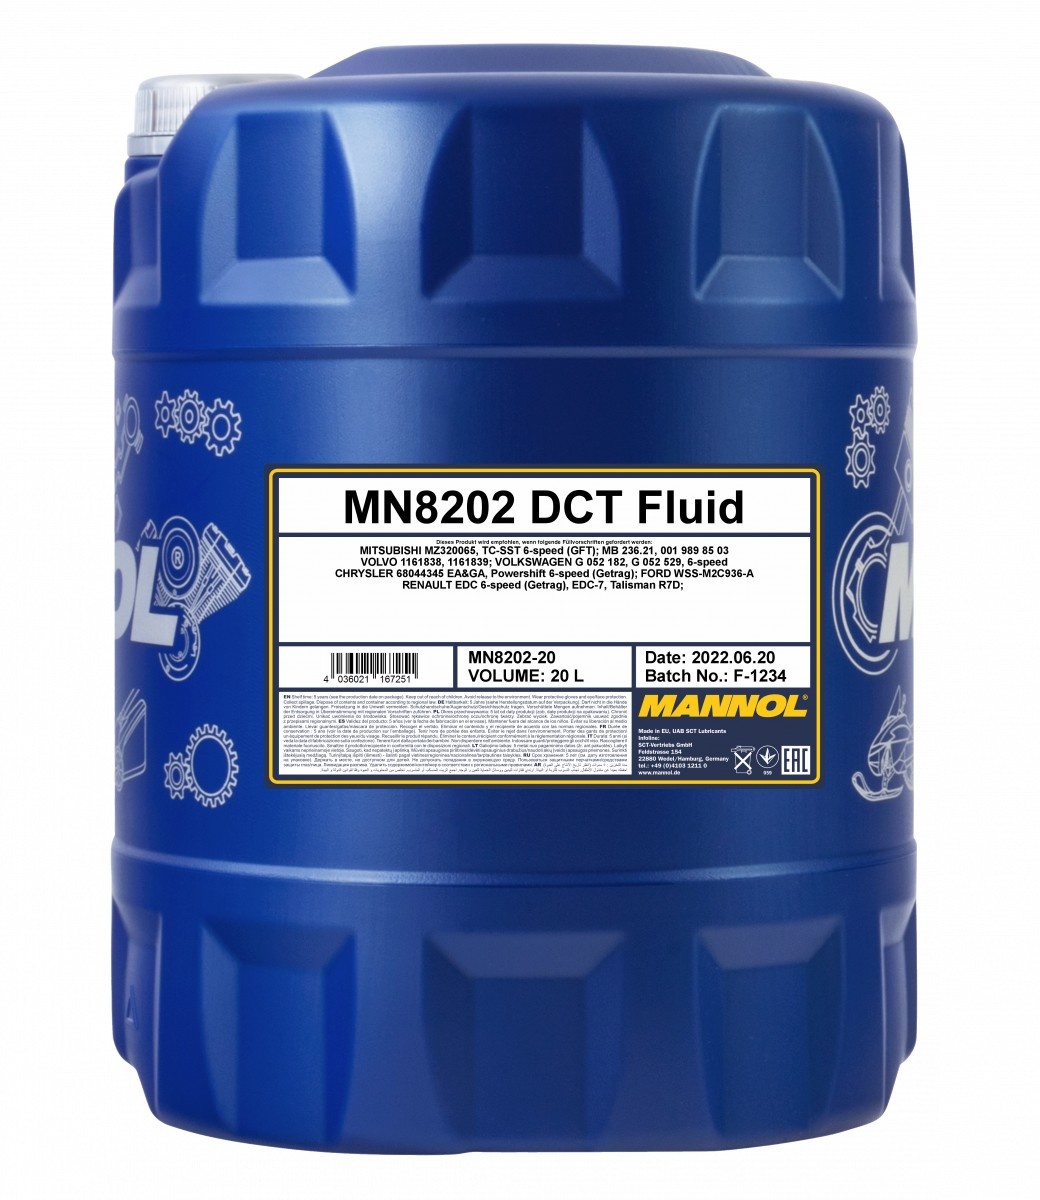 Трансмиссионное масло Mannol DCT Fluid 8202 20L